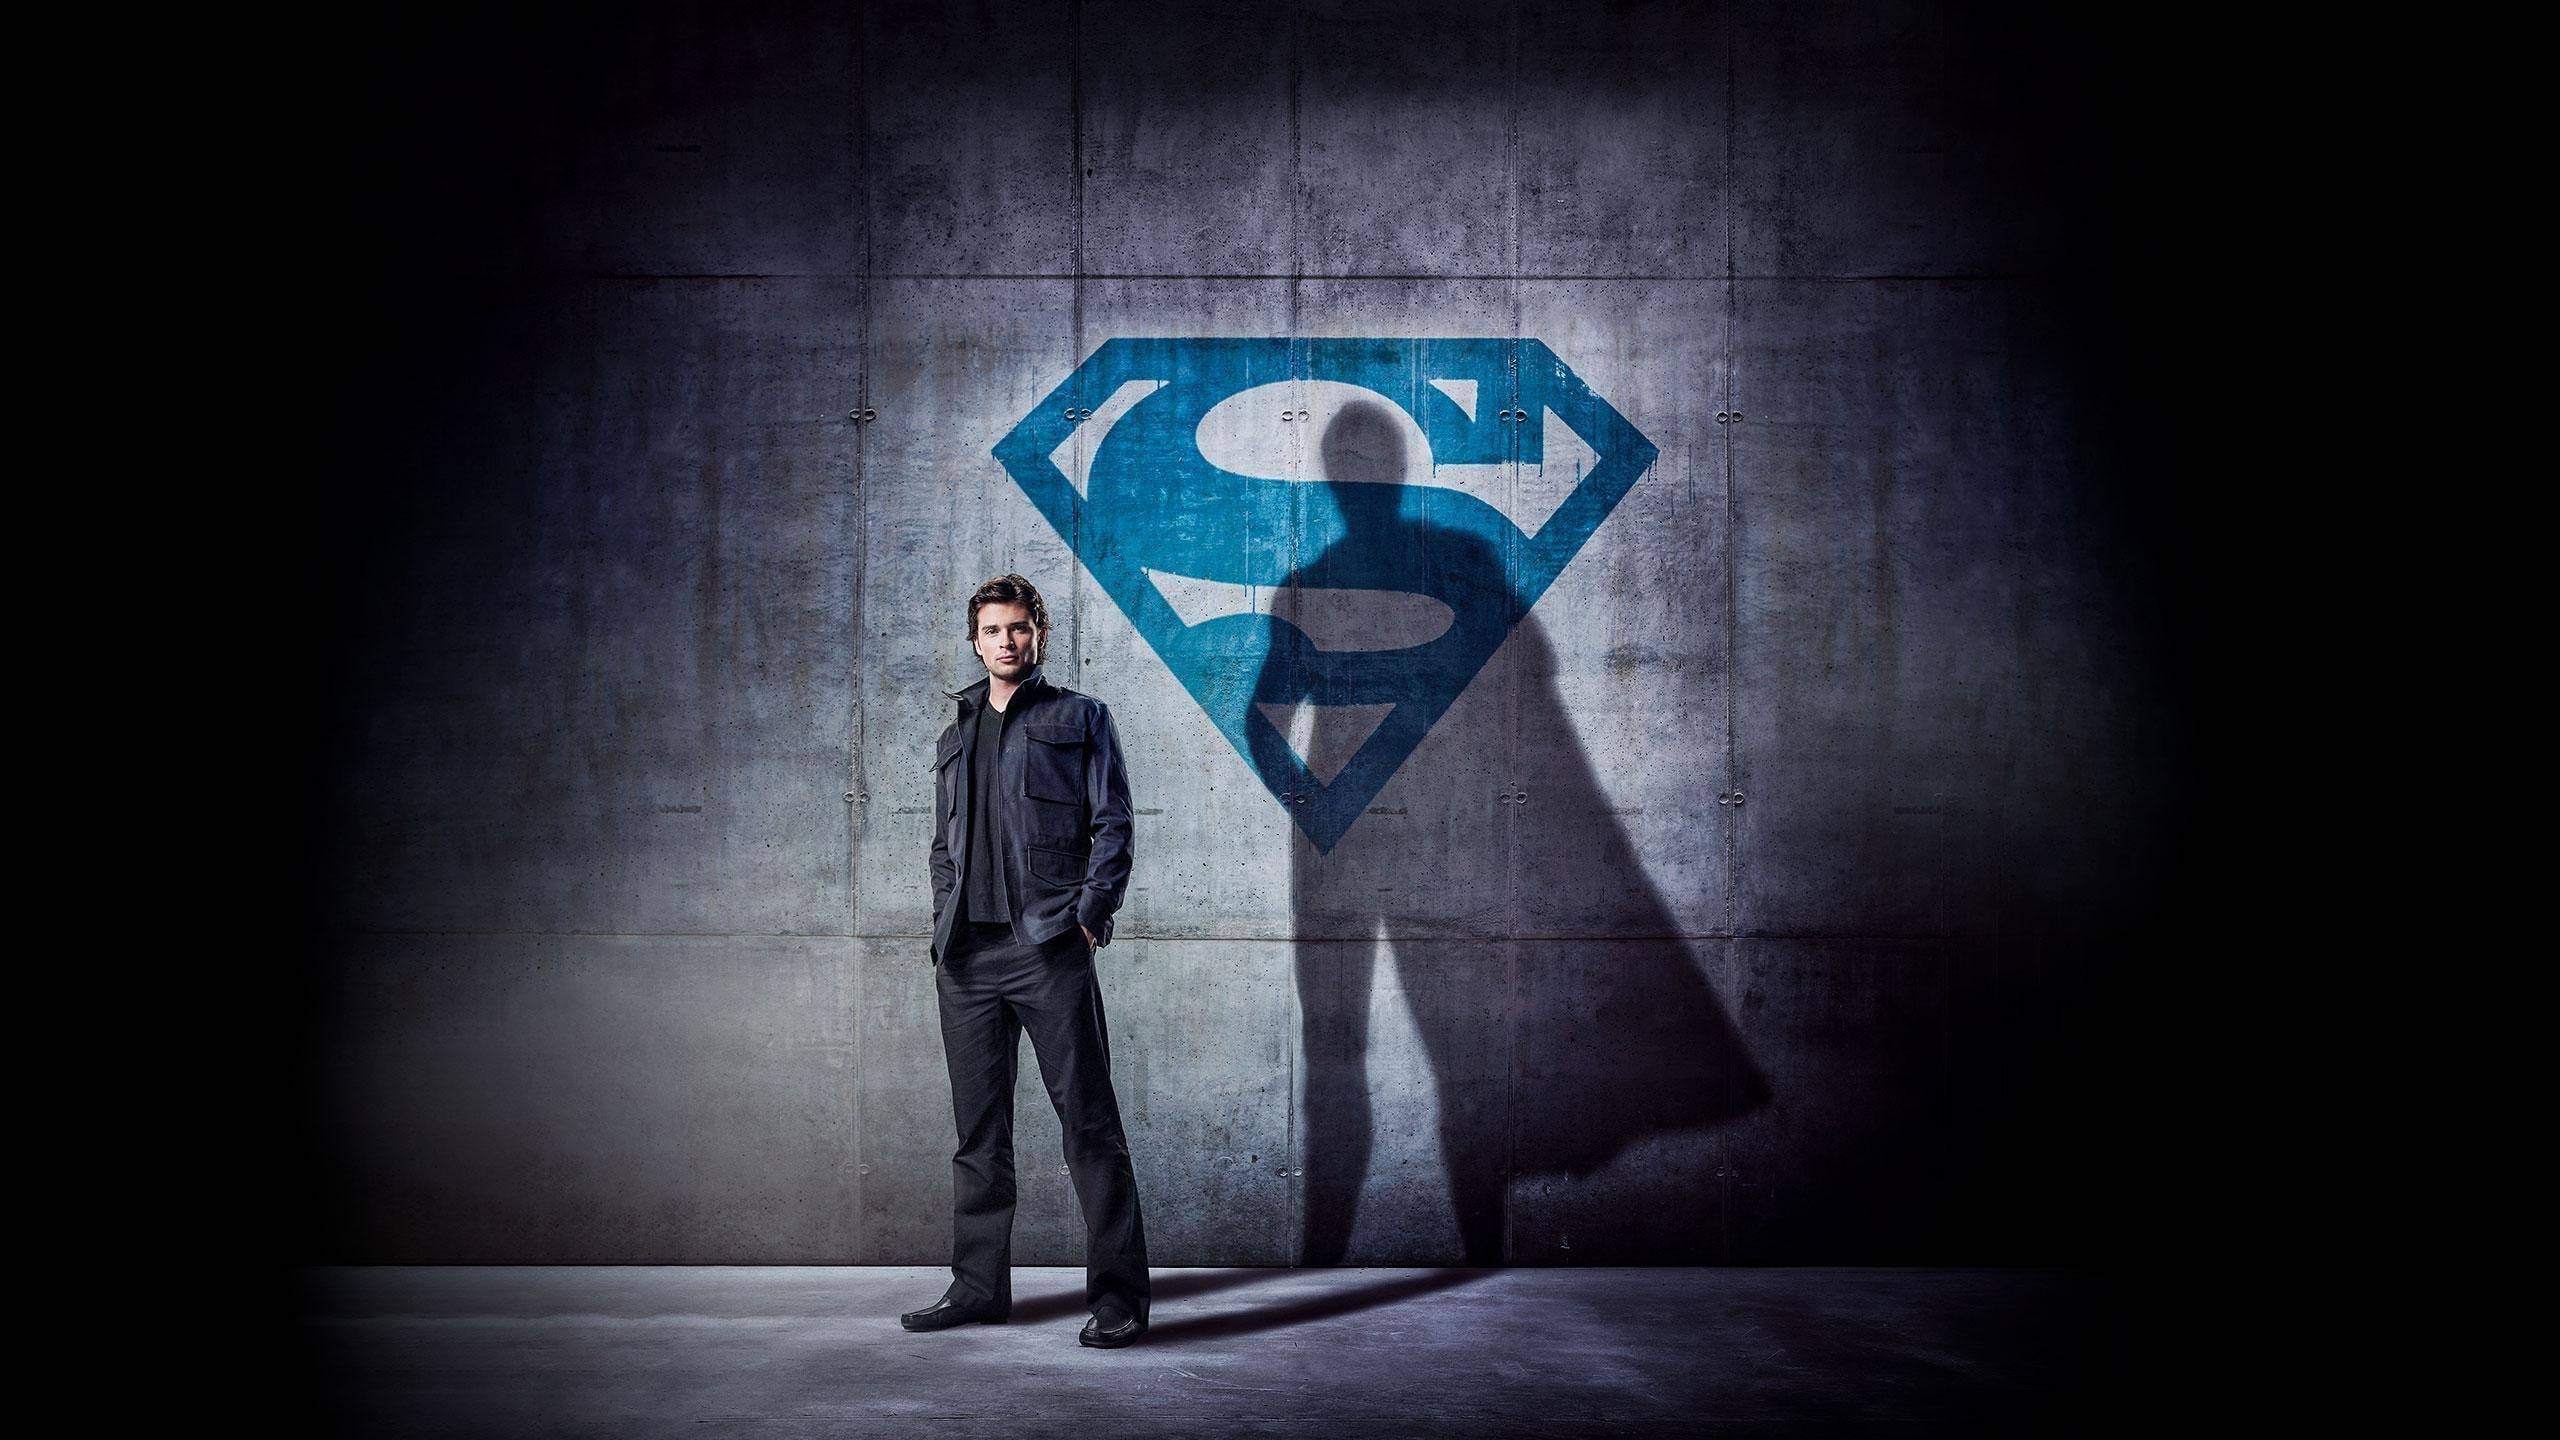 Smallville - Season 10 Episode 6